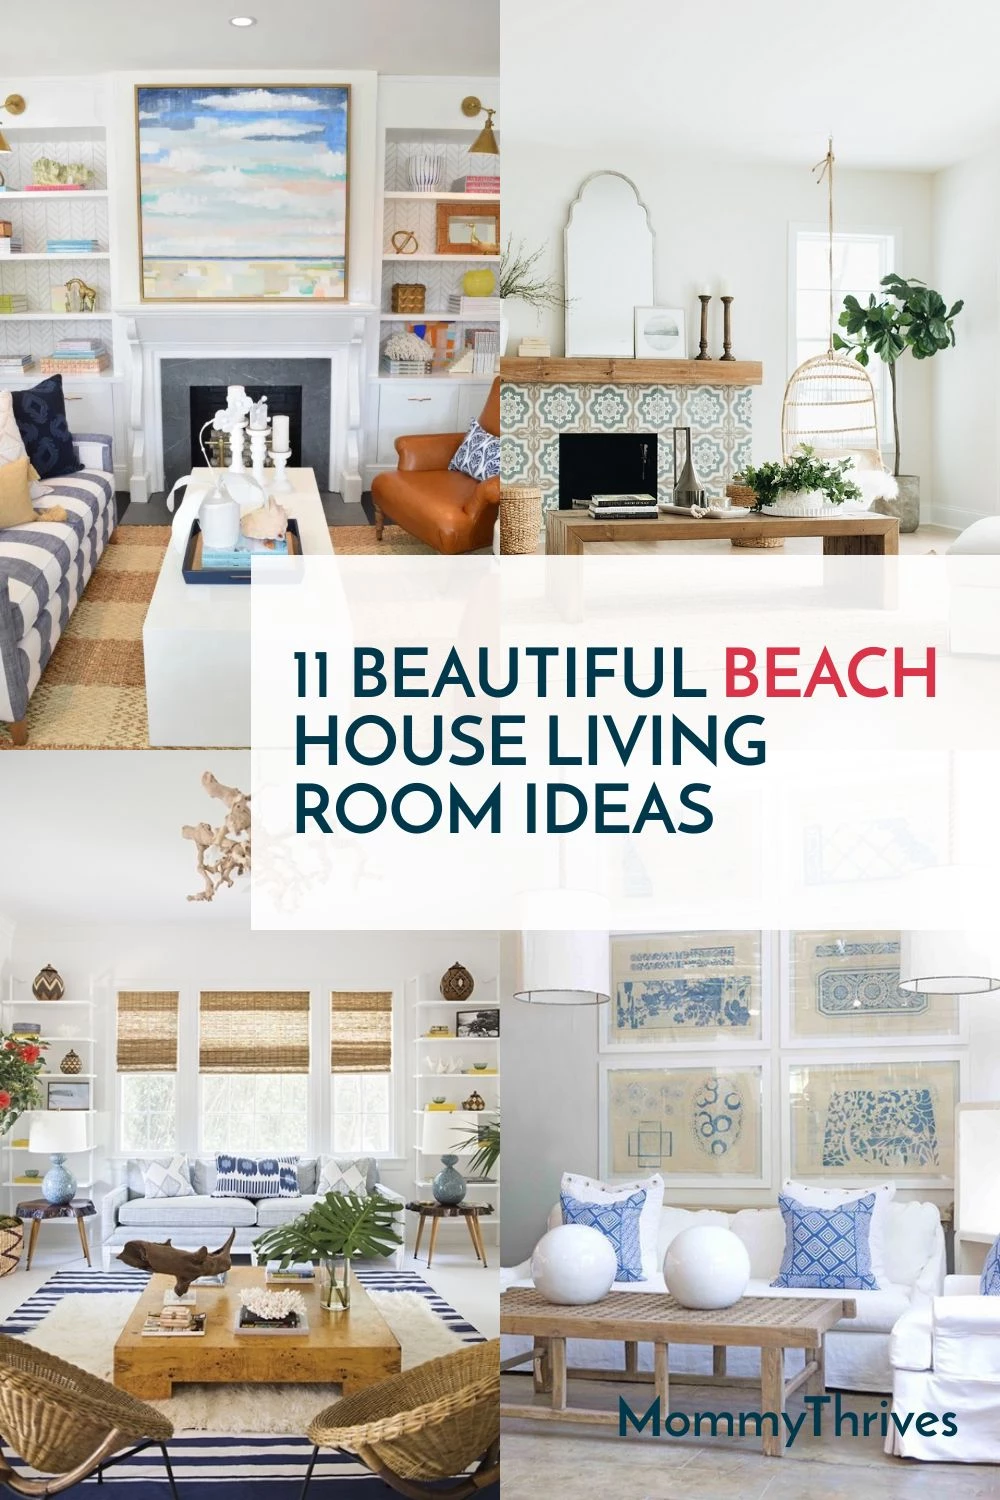 Living Room Ideas For Beach Houses - Living Room Beach Decor Ideas - Blended Beach Decor Styles